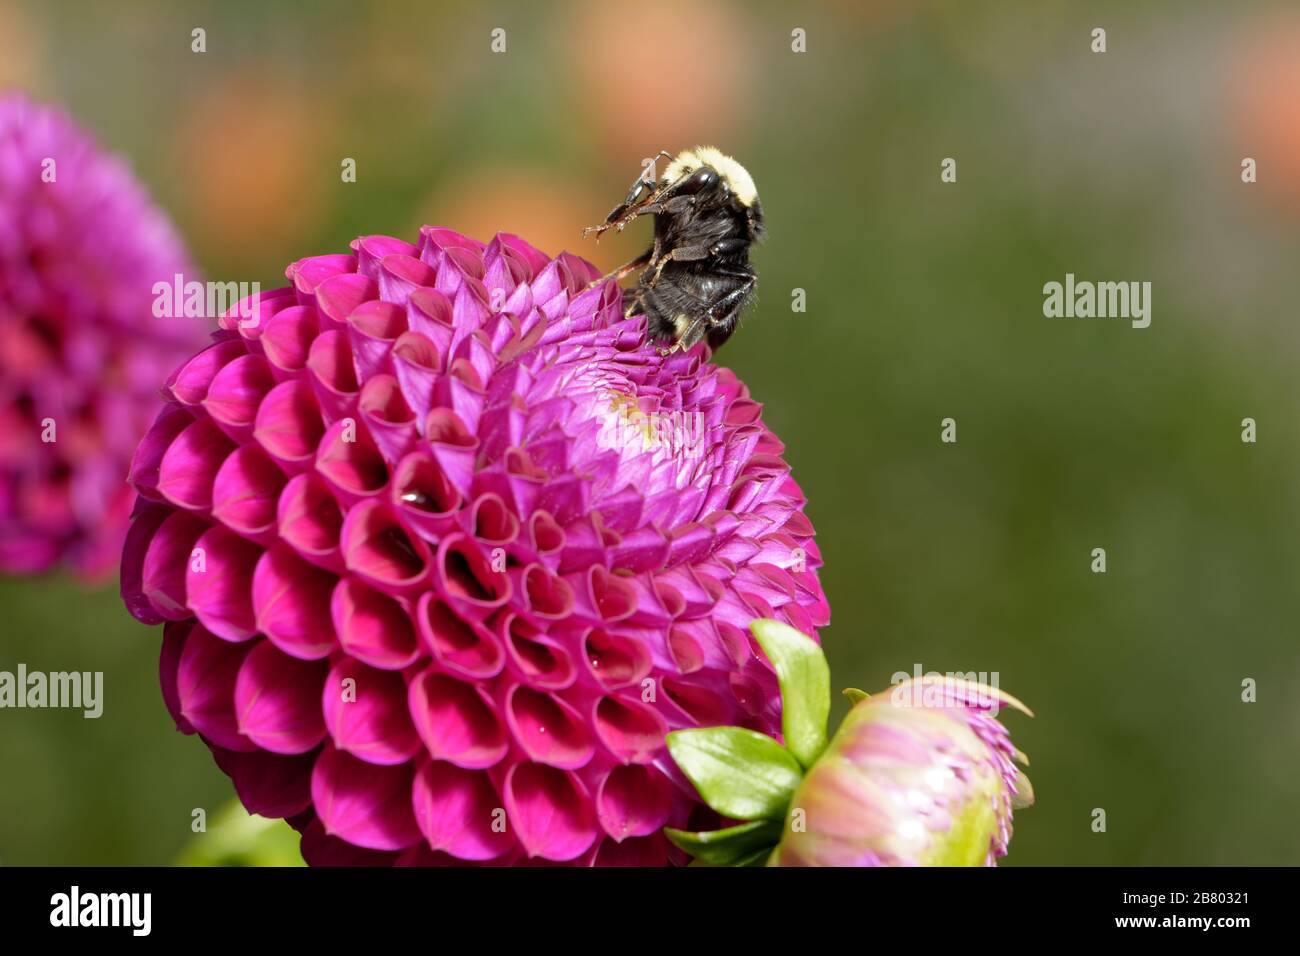 Une abeille Bumble à face jaune (Bombus vossnesenskii) repose sur ses pattes arrière au sommet d'une belle boule rose foncé Dahlia. Banque D'Images